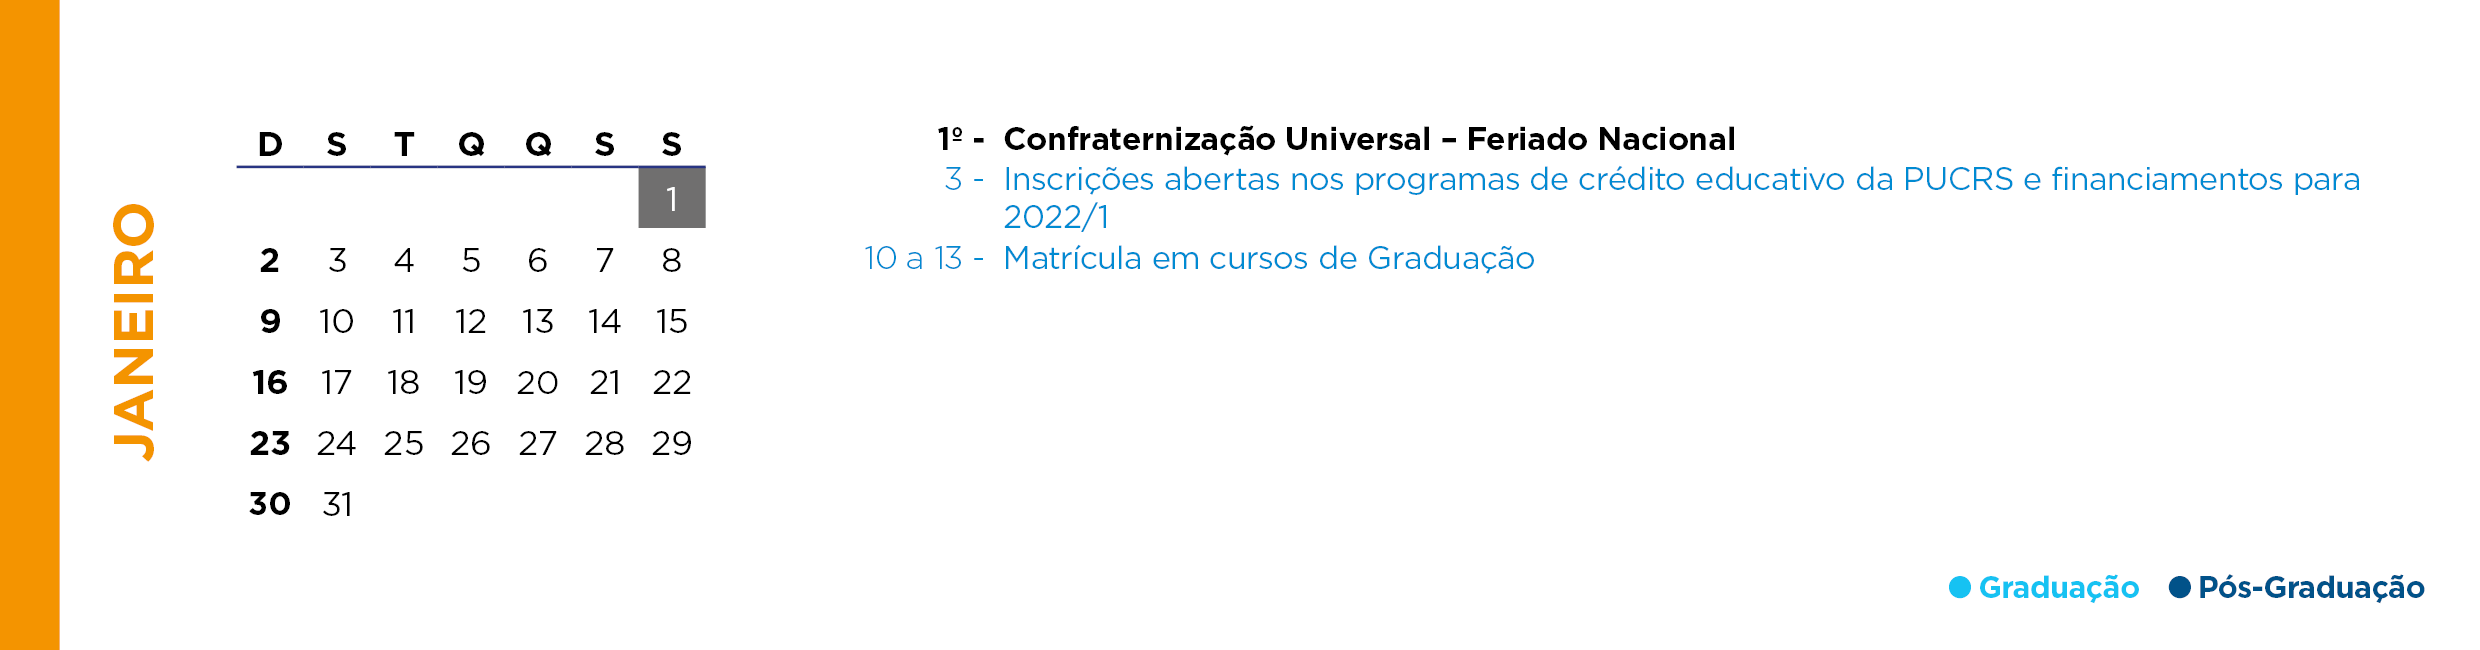 Calendário Acadêmico PUCRS - Mês de Janeiro